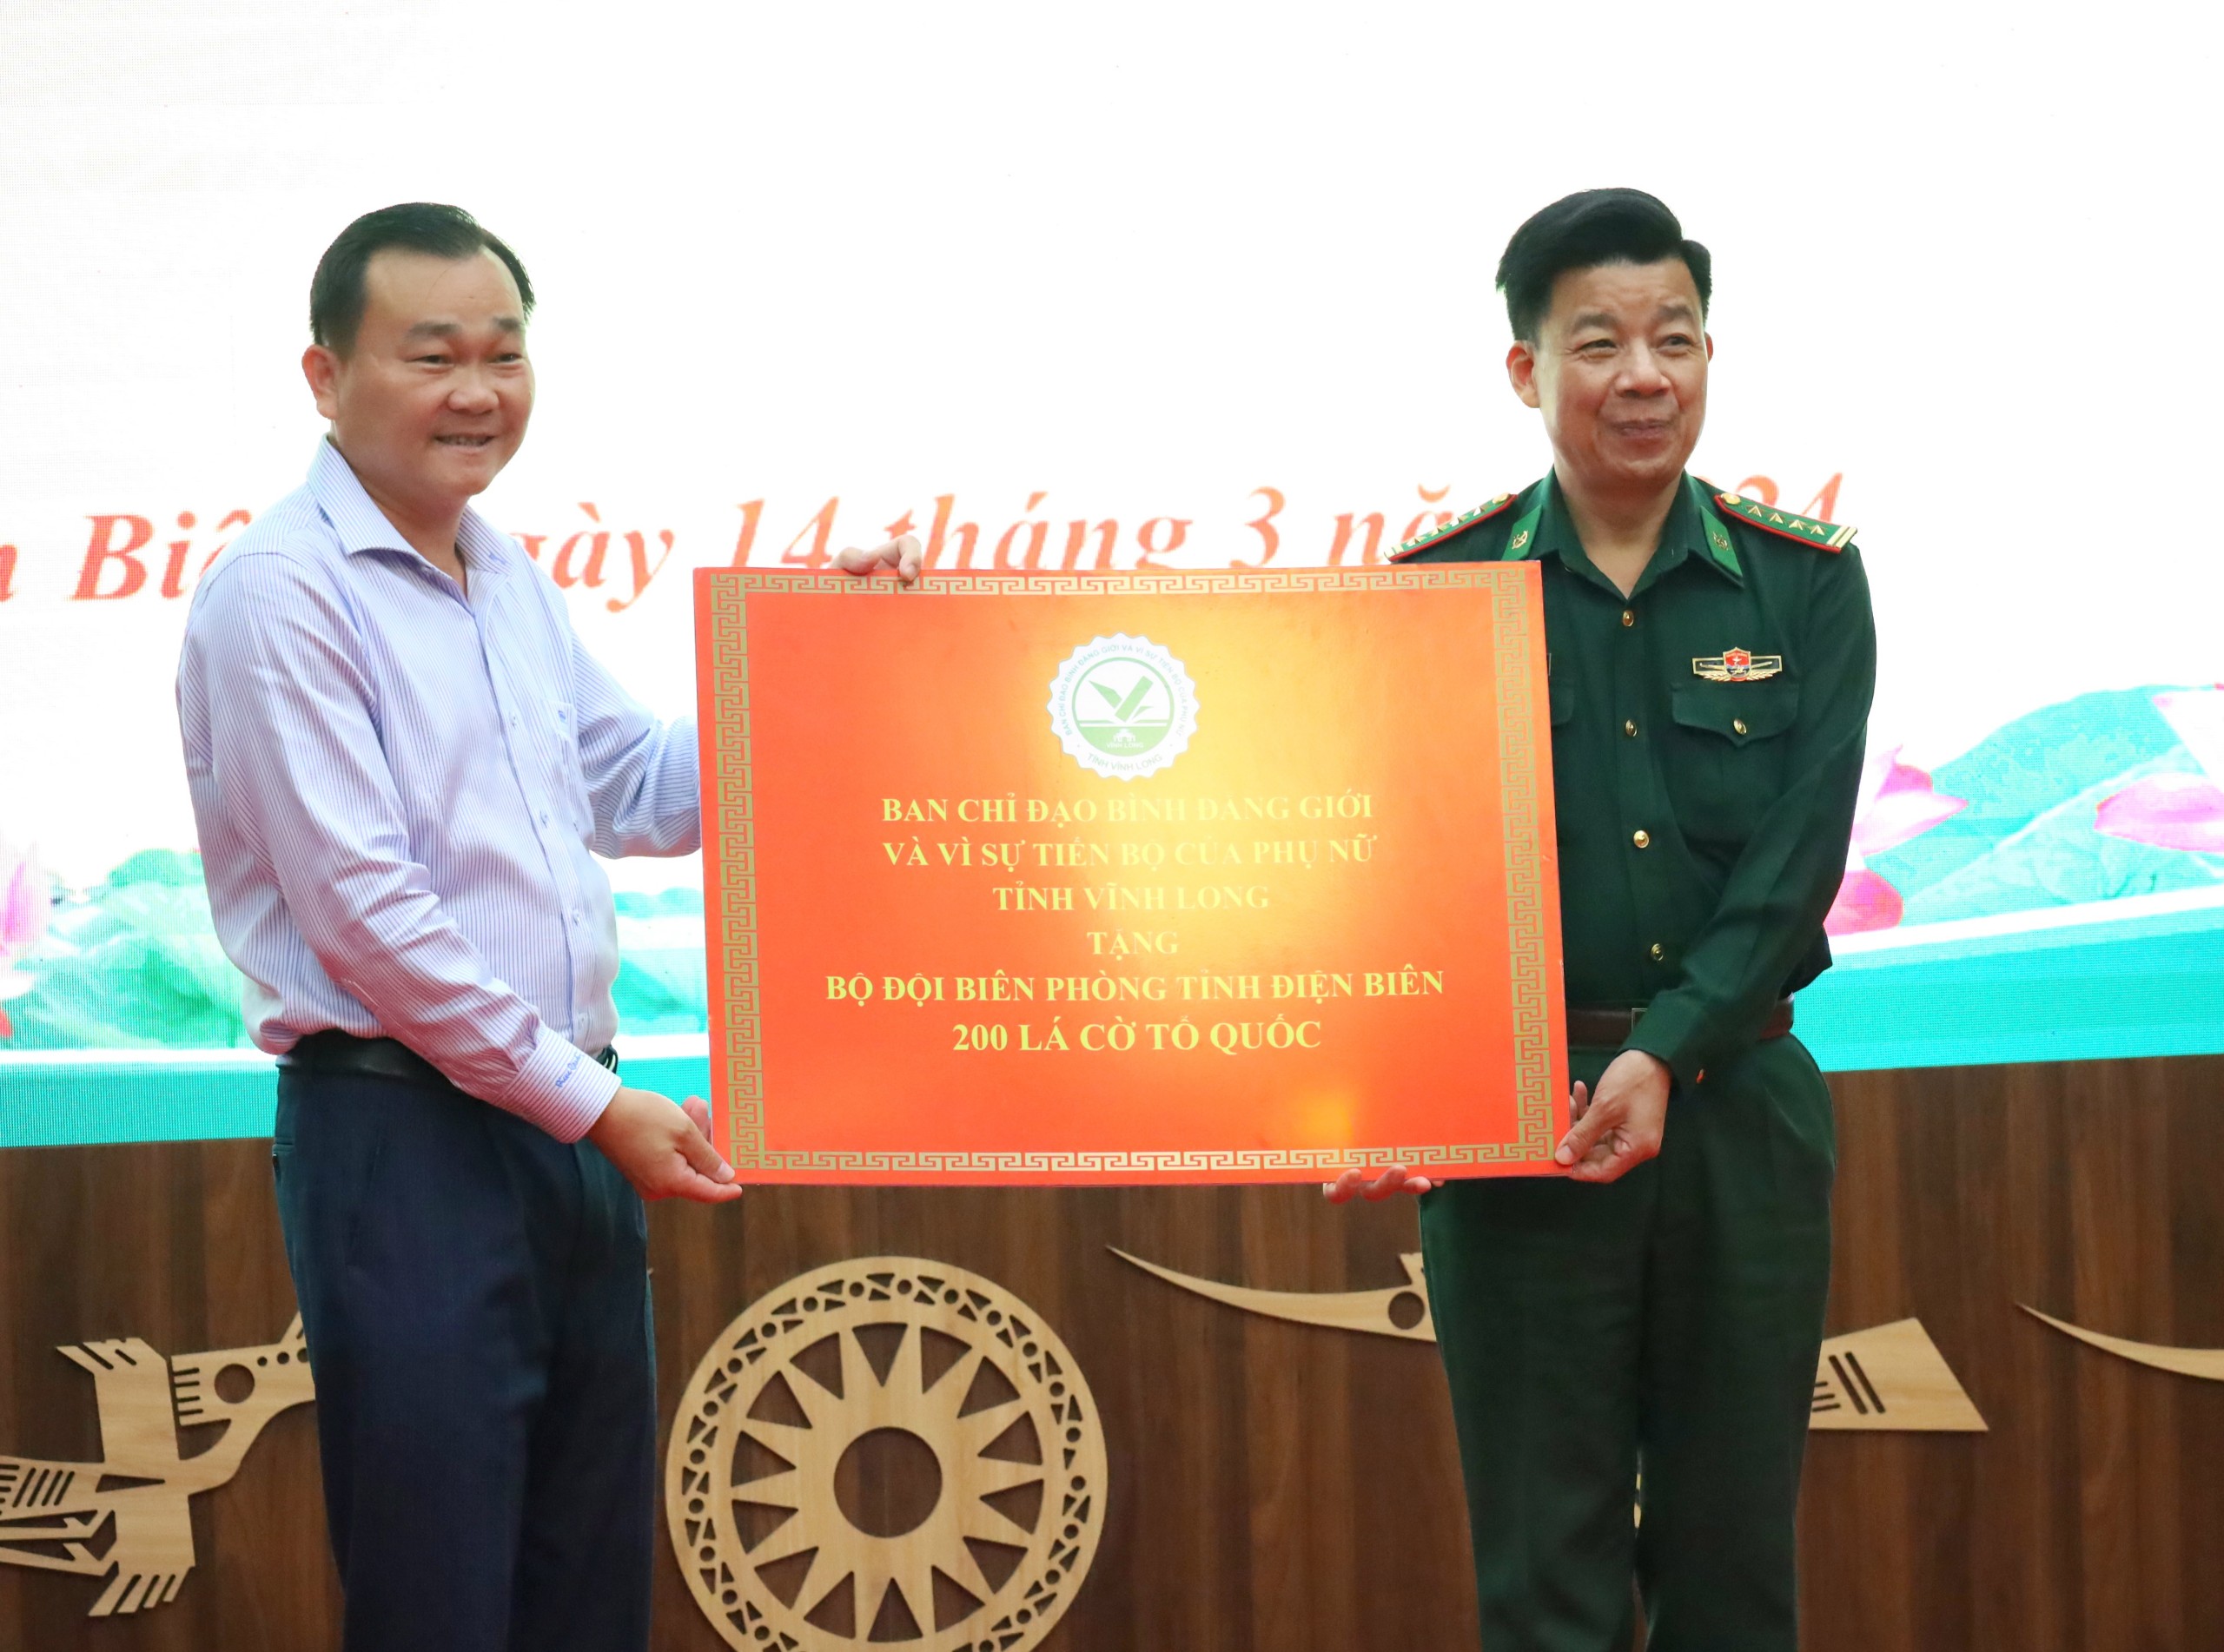 Ban Chỉ đạo Bình đẳng giới và vì sự tiến bộ của phụ nữ tỉnh Vĩnh Long trao tặng 200 lá Cờ Tổ quốc cho Bộ đội Biên phòng tỉnh Điện Biên.